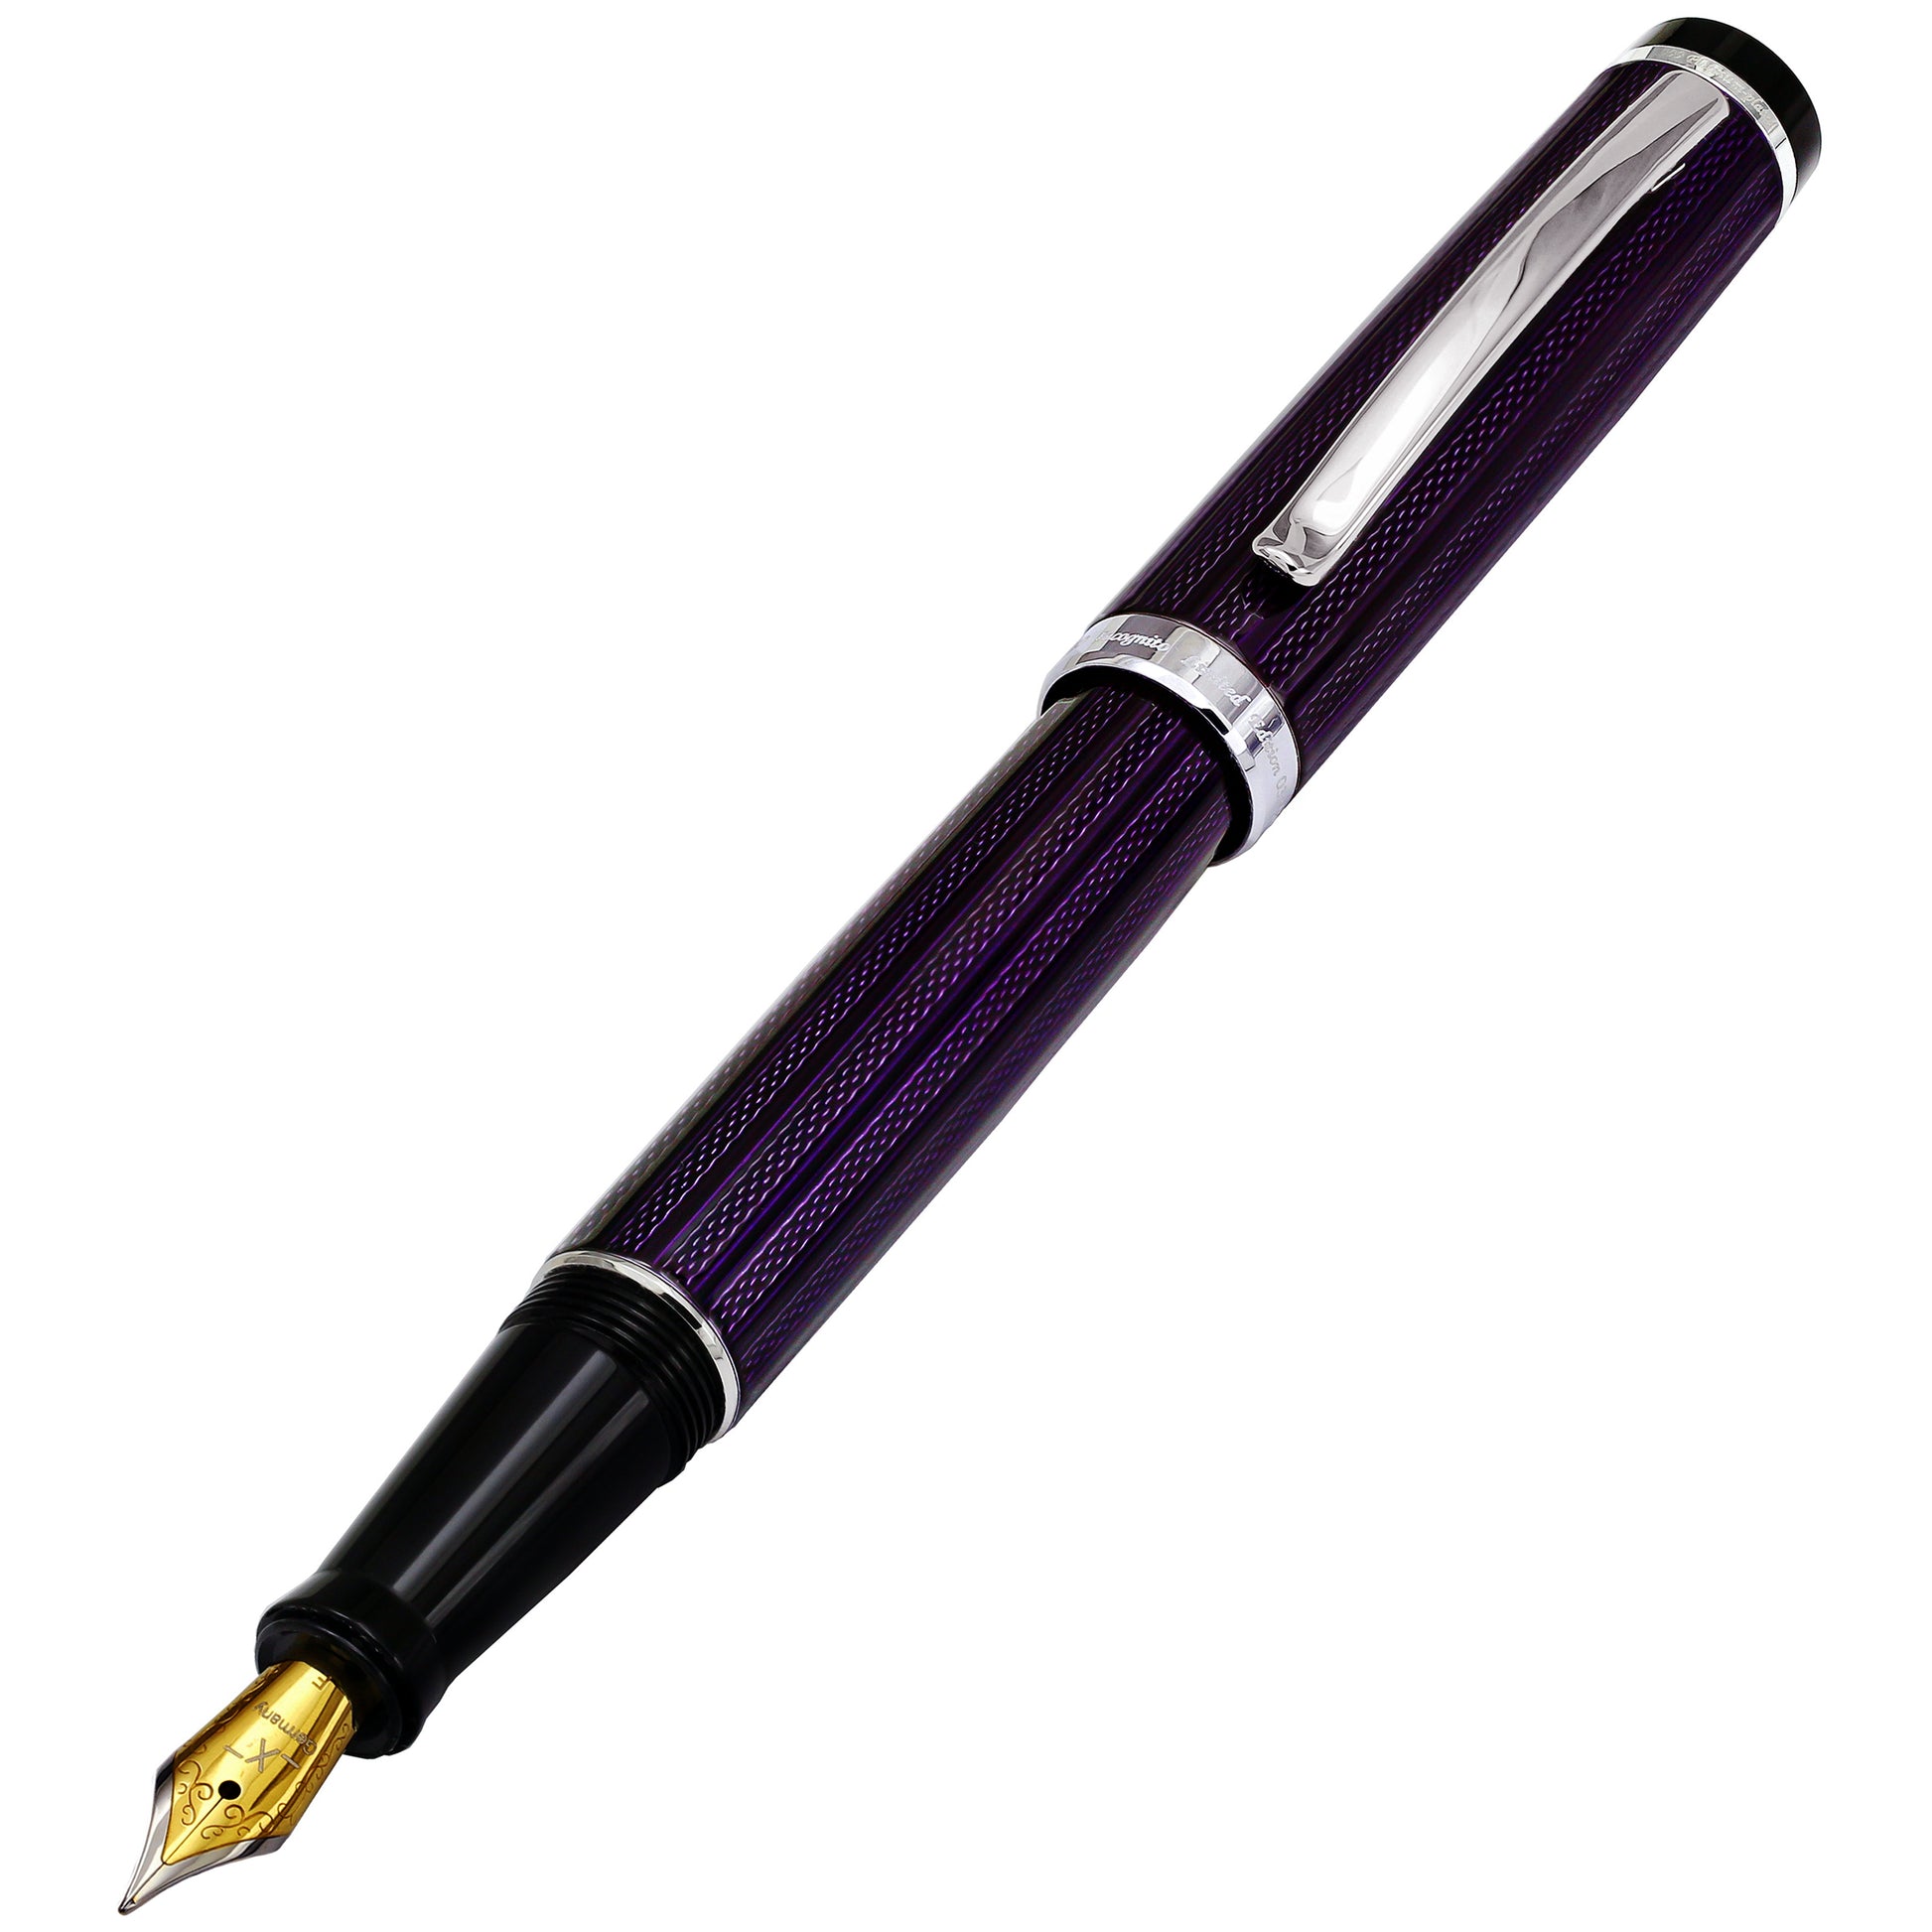 Xezo - Front view of the Incognito Purple F fountain pen